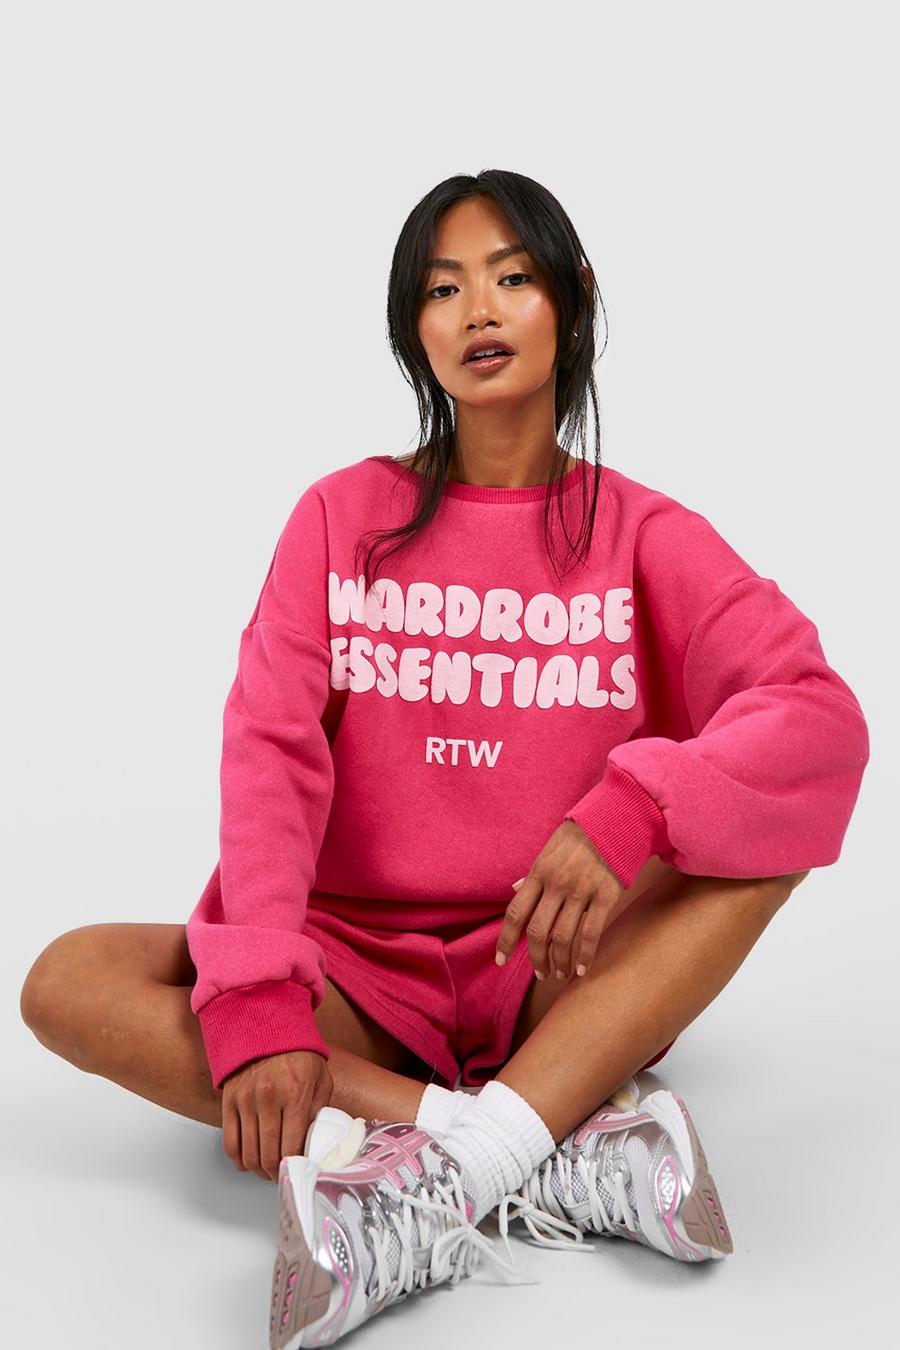 Kurzer Sweatshirt-Trainingsanzug mit Wardrobe Essentials Print, Hot pink image number 1